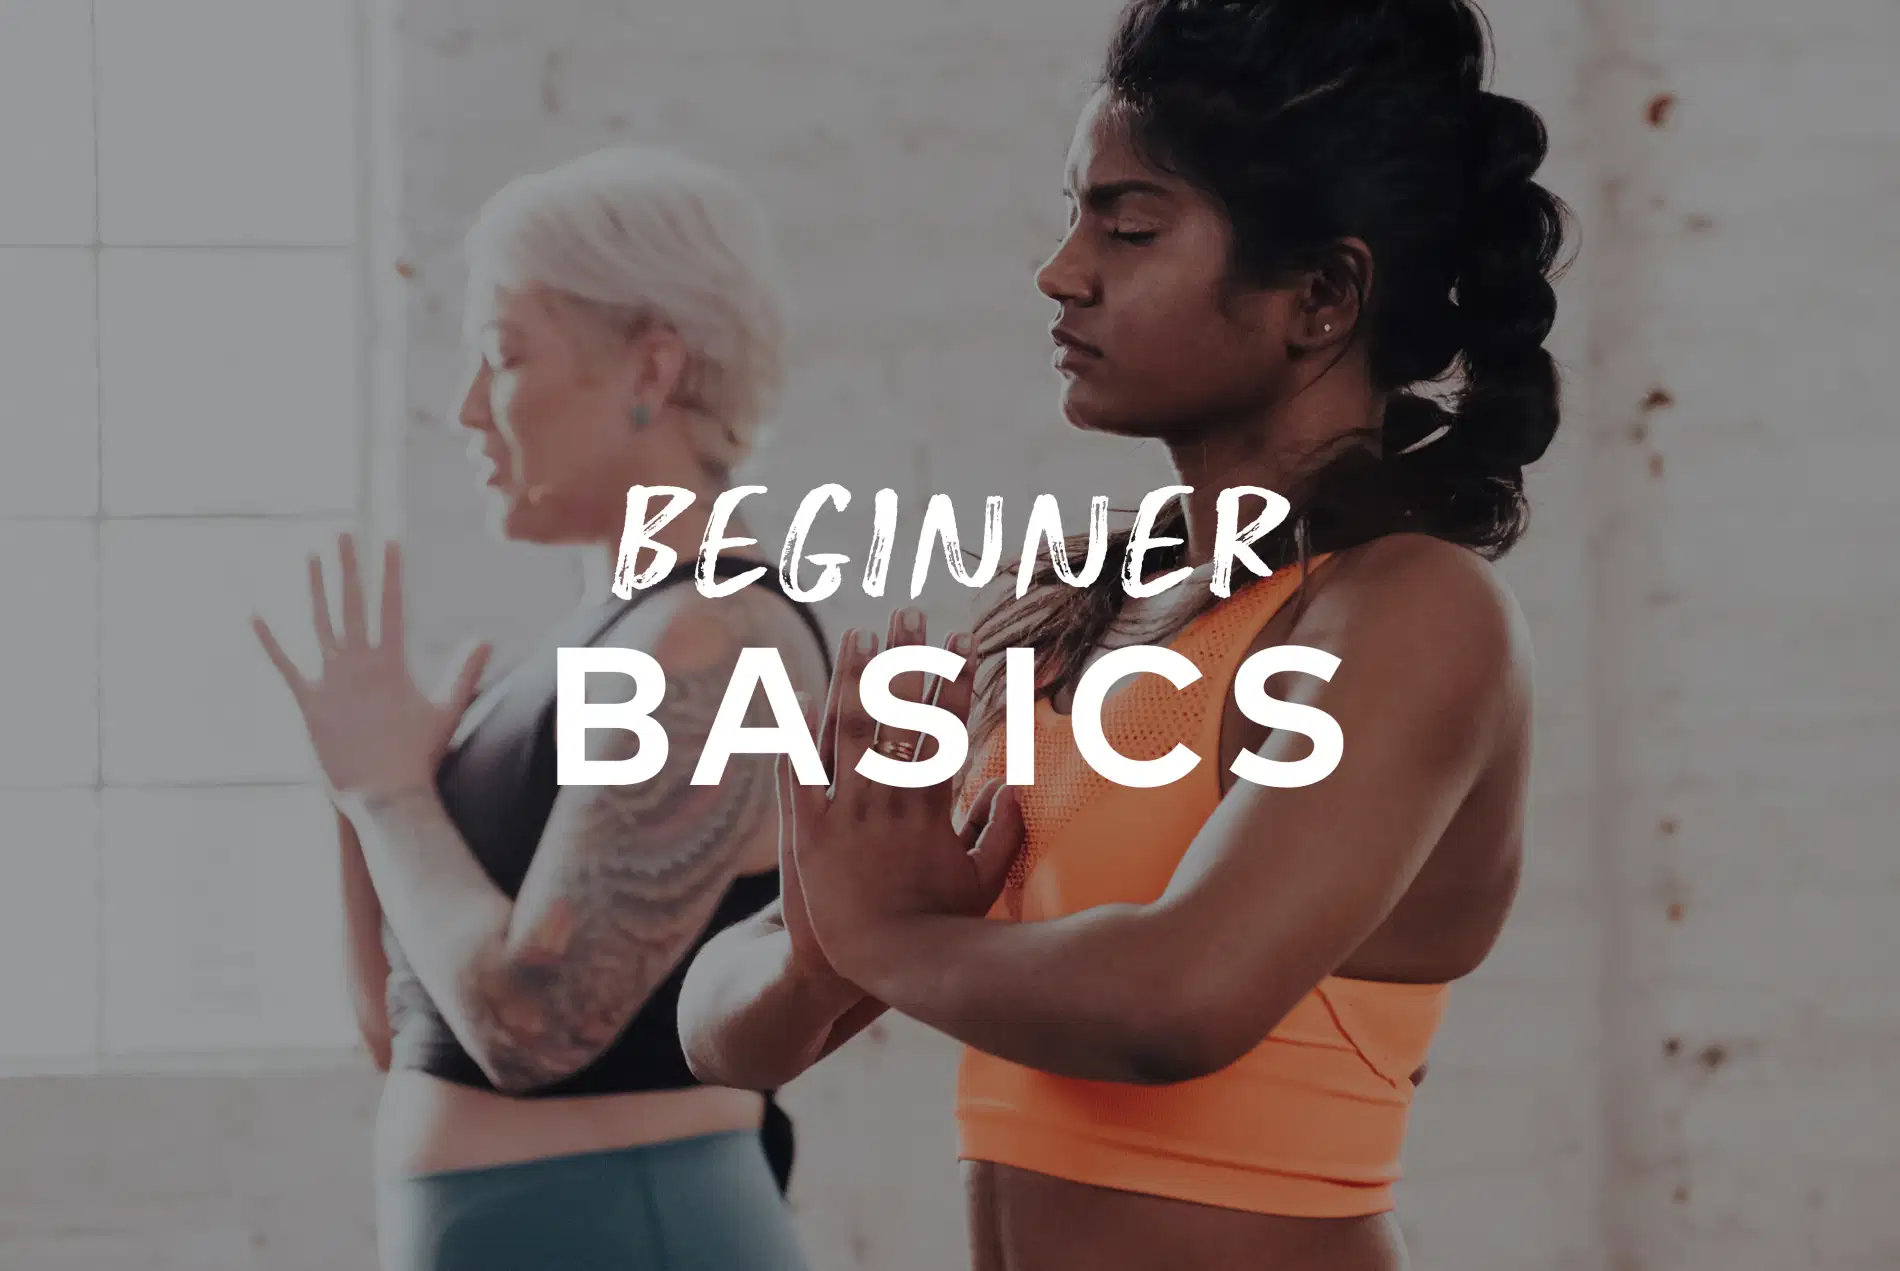 Beginner Basics